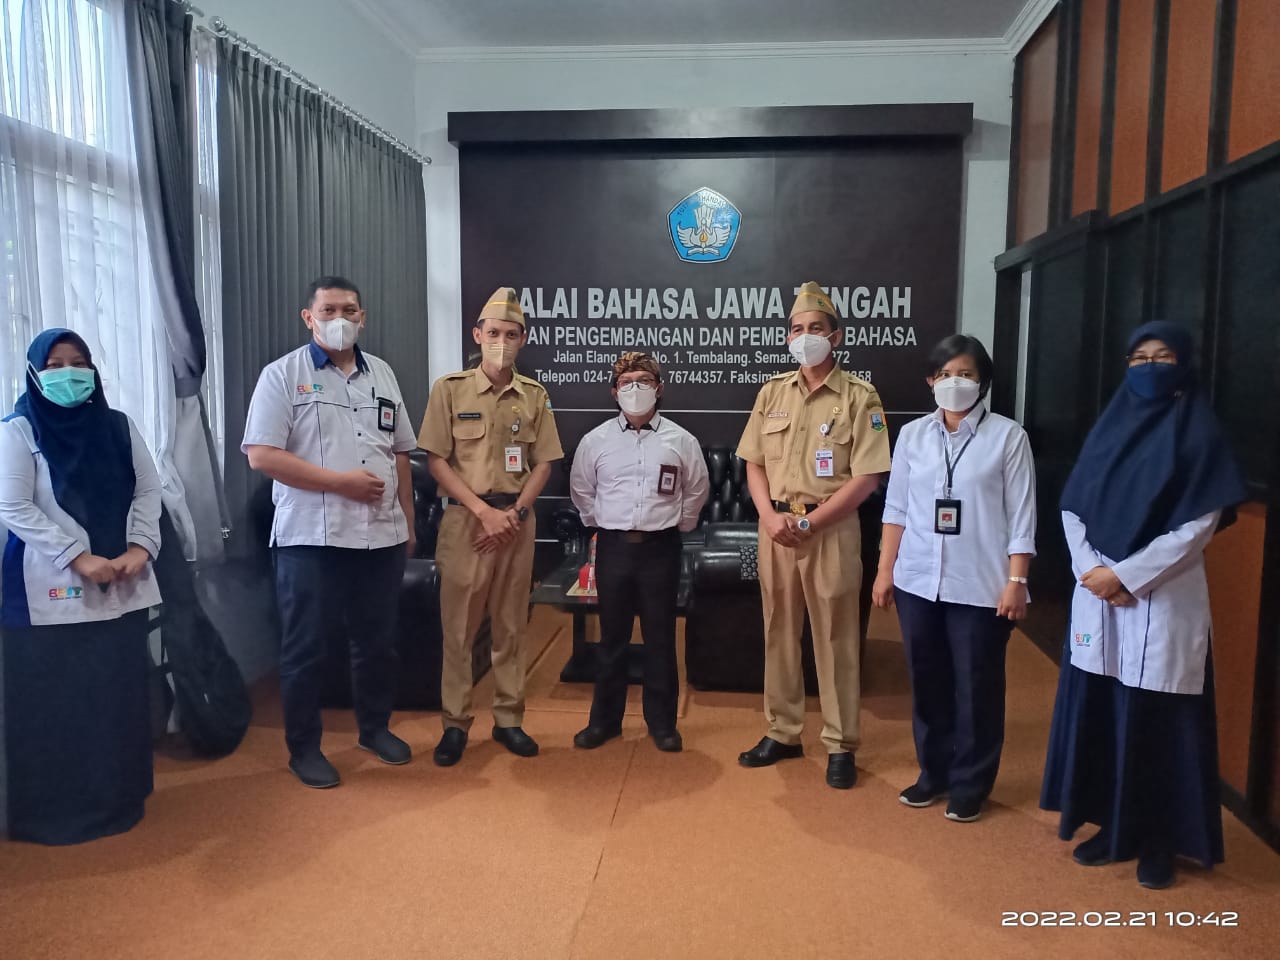 Dari Kunjungan Disdikbudpora Kabupaten Semarang ke BBPJT, Kompetensi Guru Bahasa Jawa Diharapkan Berdampak Siswa Miliki Unggah-Ungguh